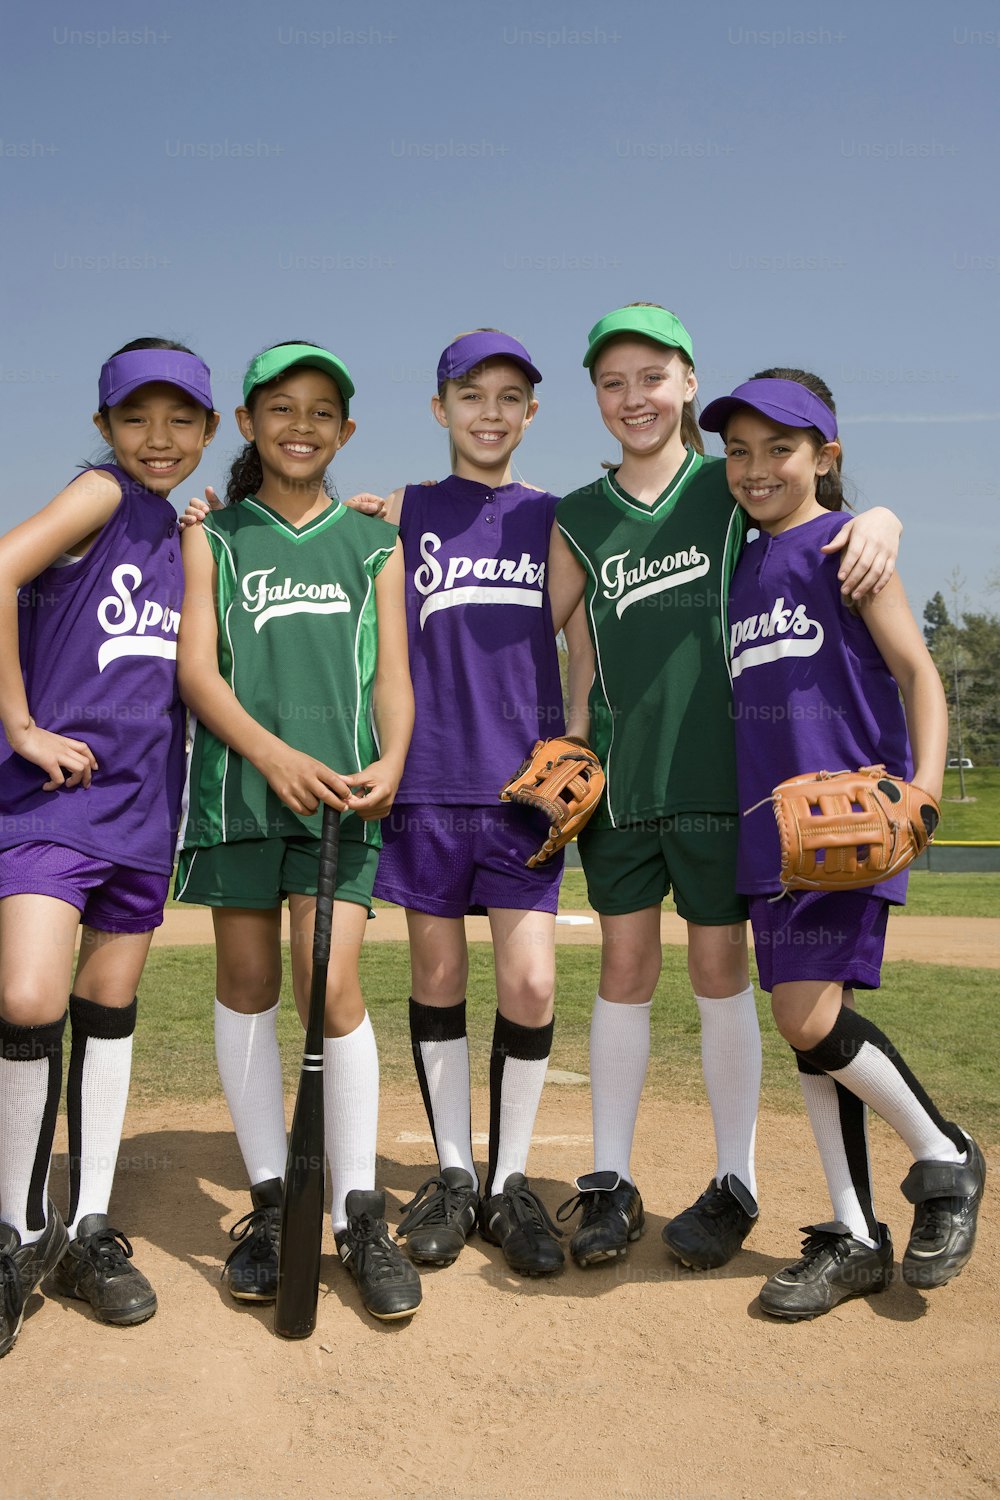 Un groupe de jeunes filles debout les unes à côté des autres sur un terrain de baseball